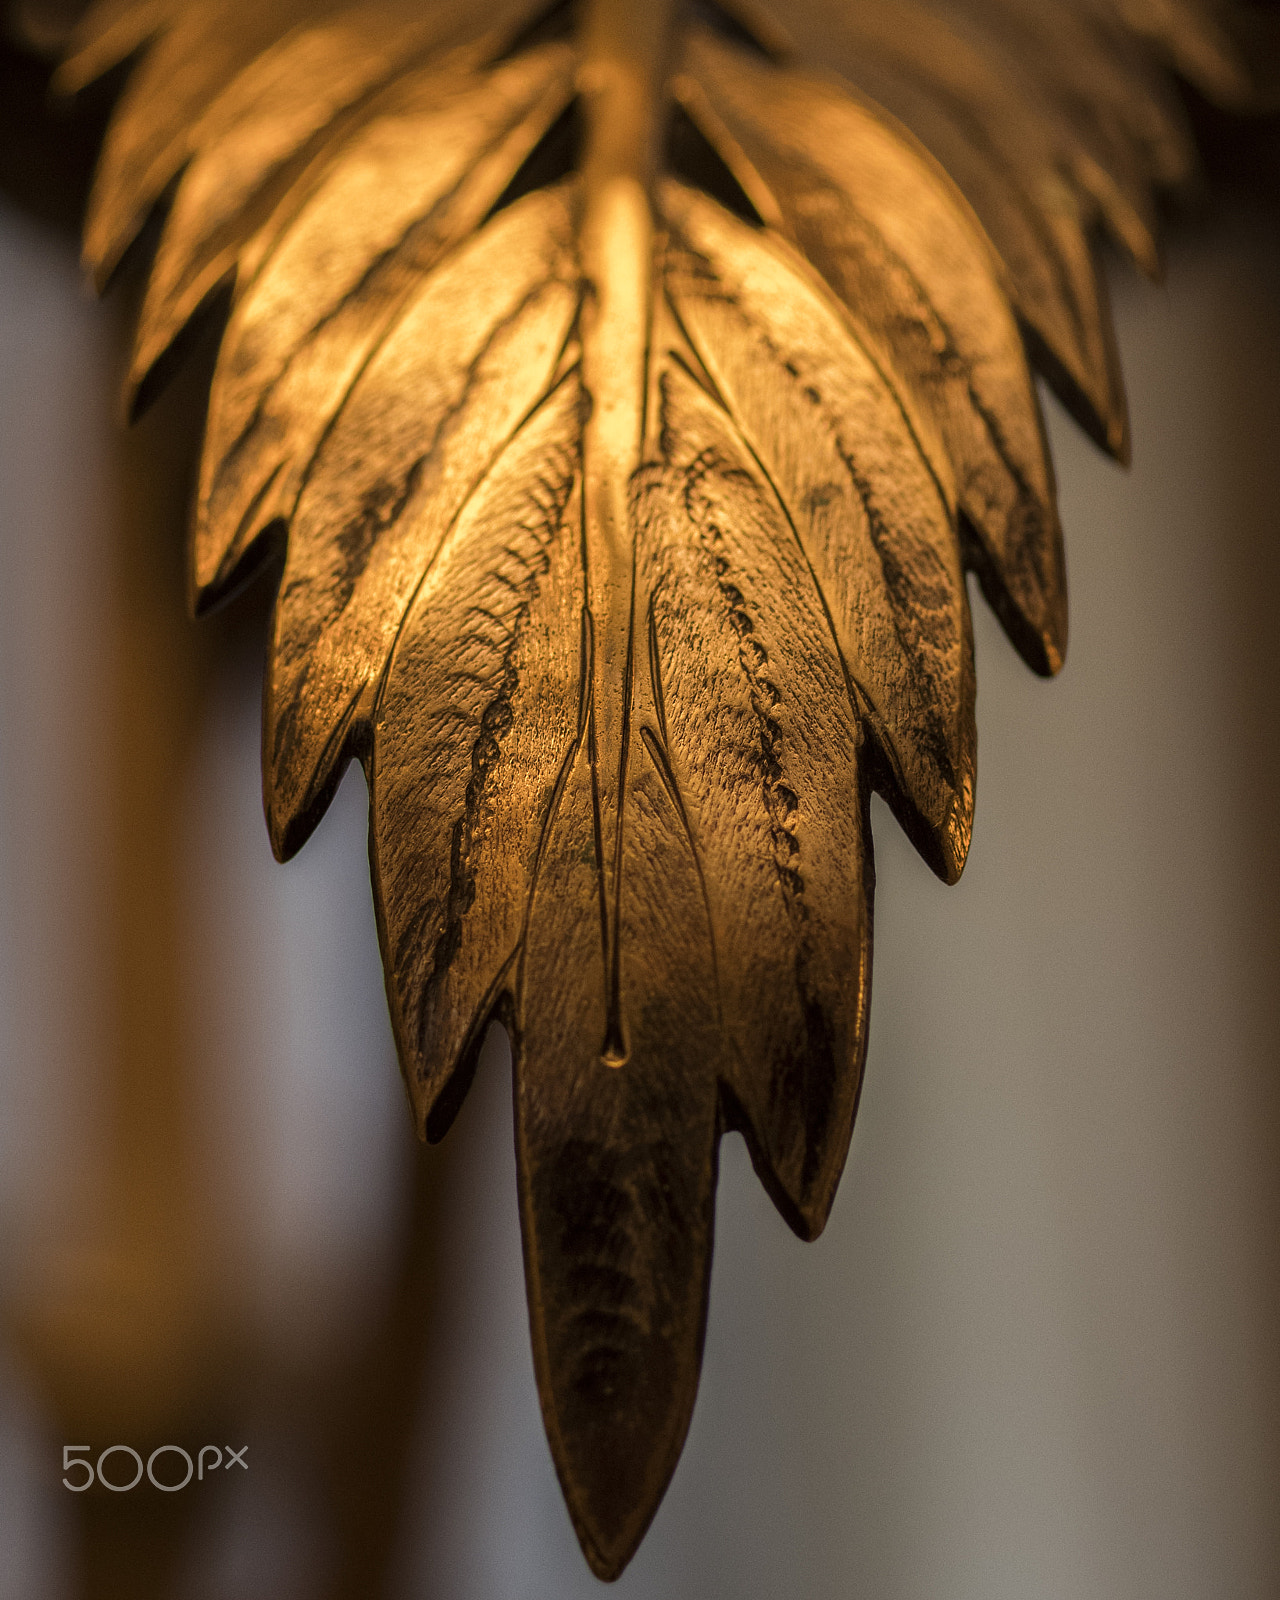 Pentax K-1 sample photo. Golden leaf photography